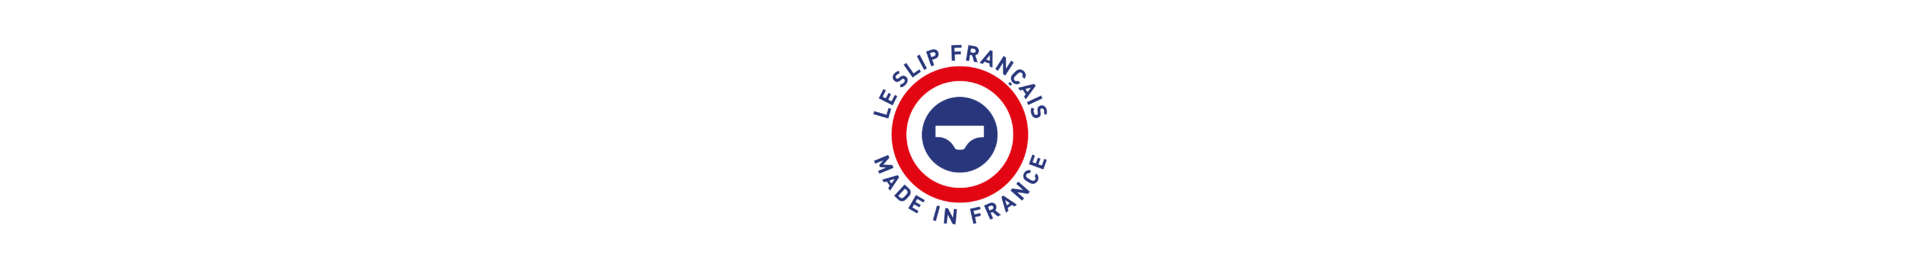 Vêtements et sous-vêtements fabrication française du Slip Français